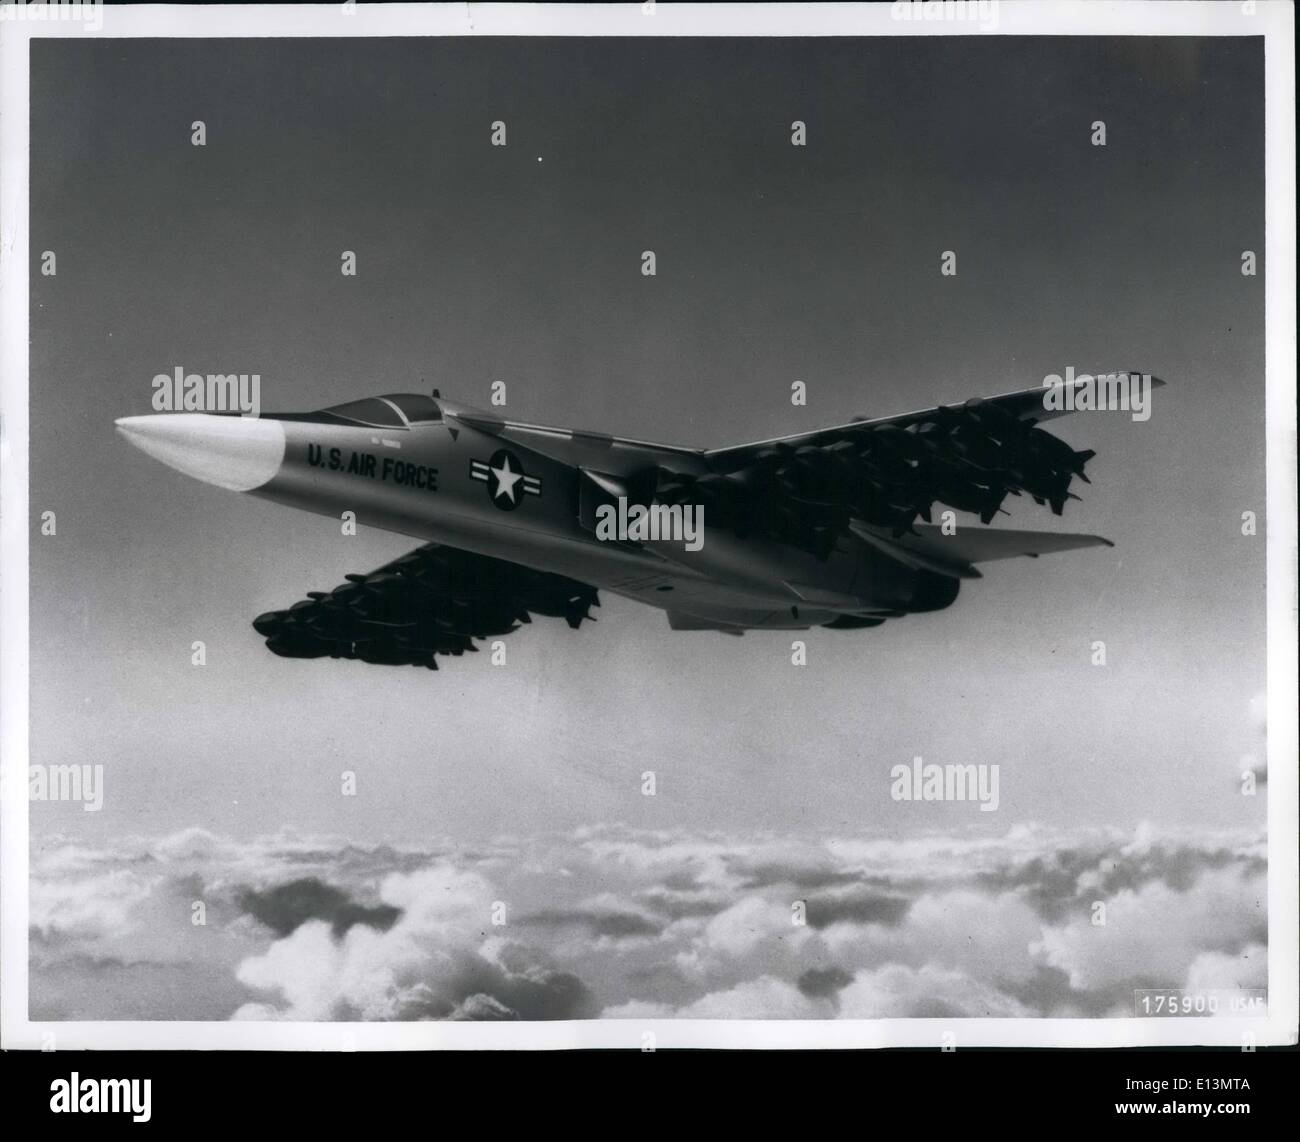 Marzo 22, 2012 - Esto ilustra cómo un Comando Aéreo Estratégico de la USAF bombardero FB-111 podrá transportar 50 bombas convencionales, con un peso de 750 libras cada uno. Cuarenta y ocho de las bombas pueden ser montadas bajo las alas y dos más realizadas internamente. Foto de stock